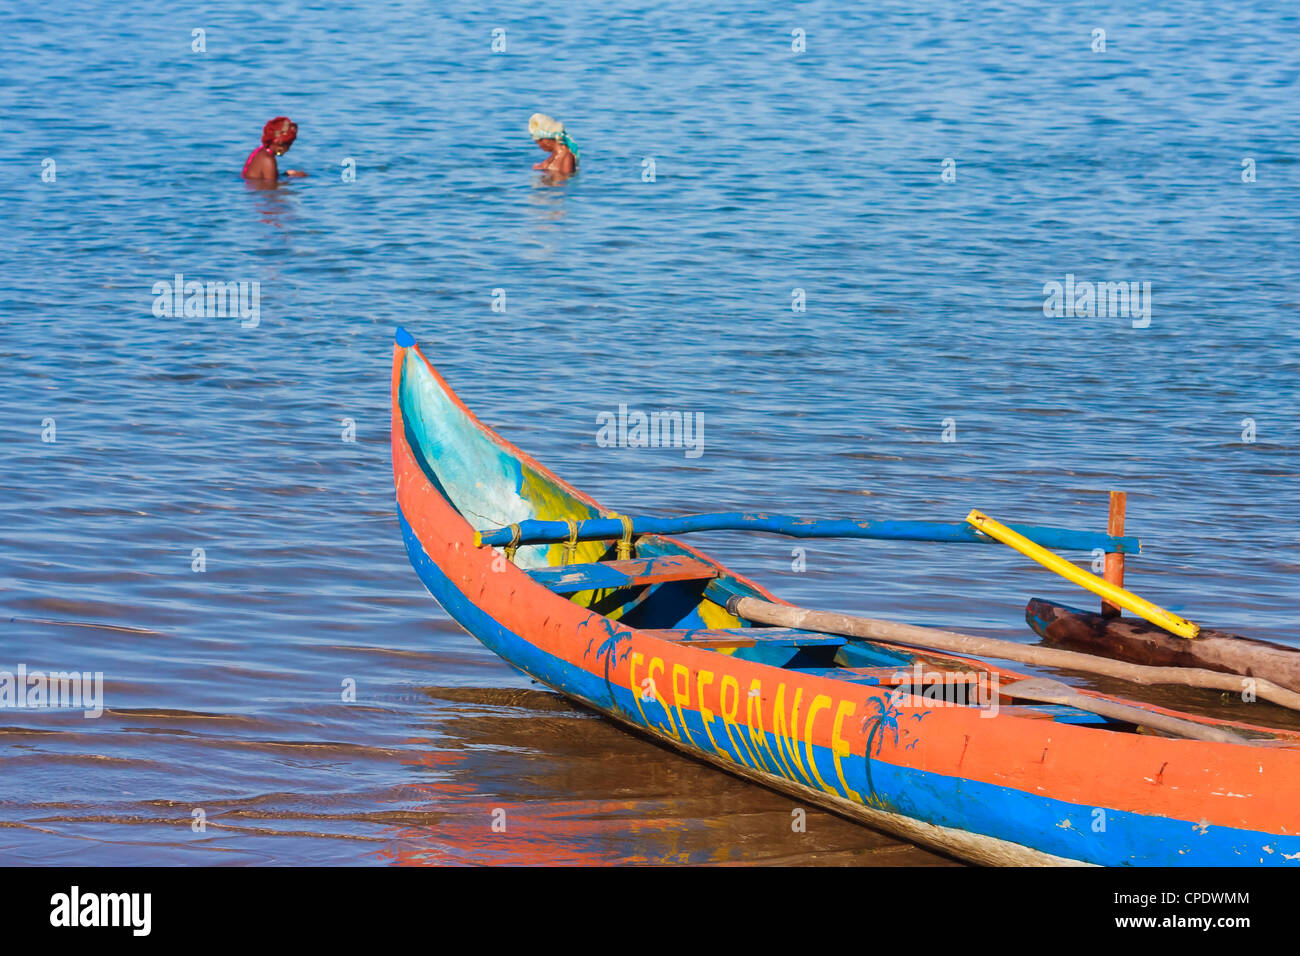 Outrigger canoë sur la plage de Foulpointe, est de Madagascar Banque D'Images